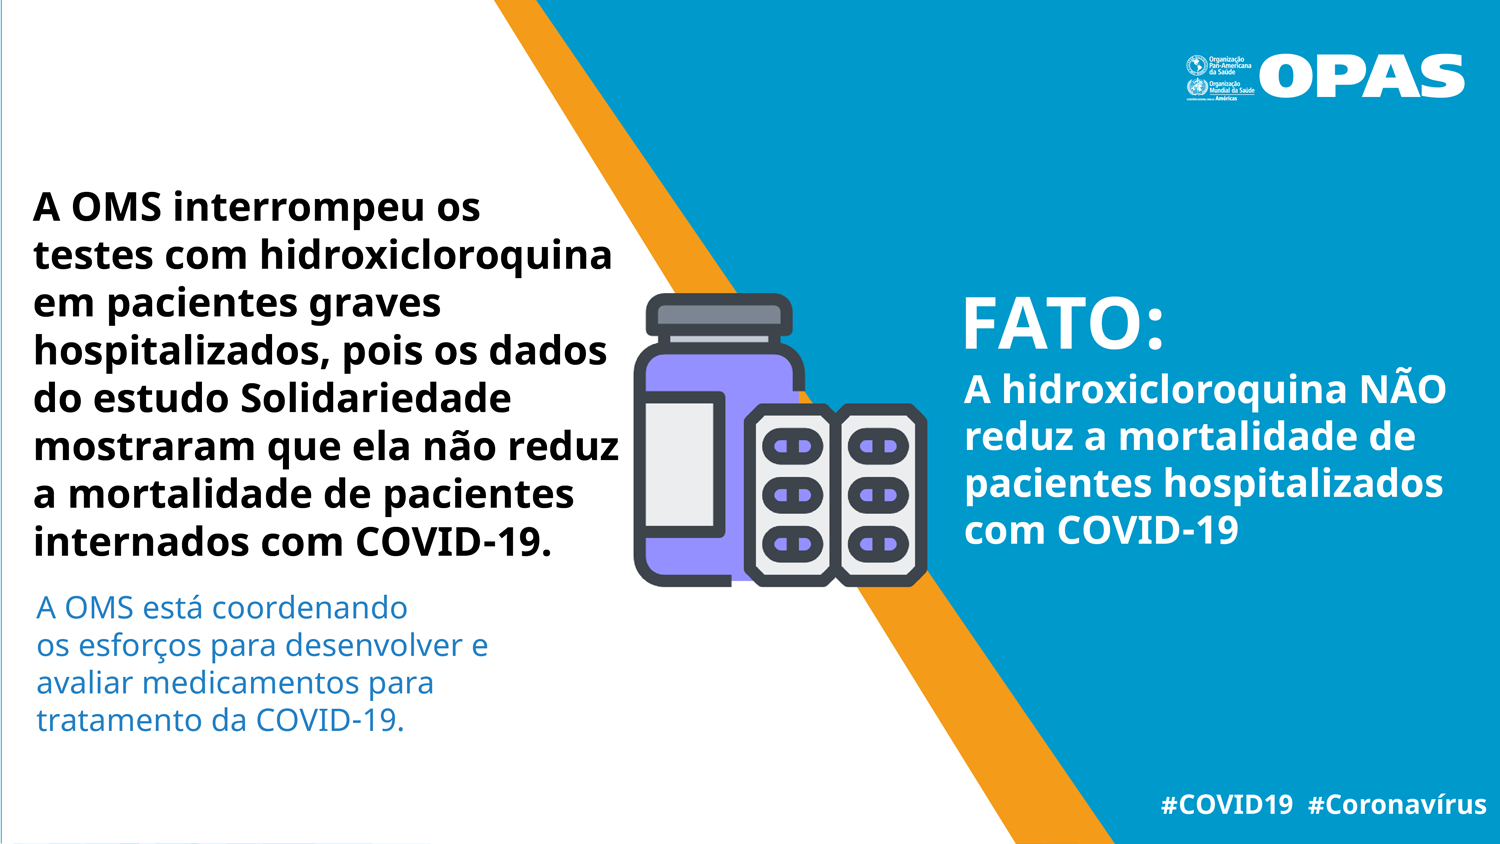 FATO: A hidroxicloroquina NÃO reduz a mortalidade de pacientes hospitalizados com COVID-19